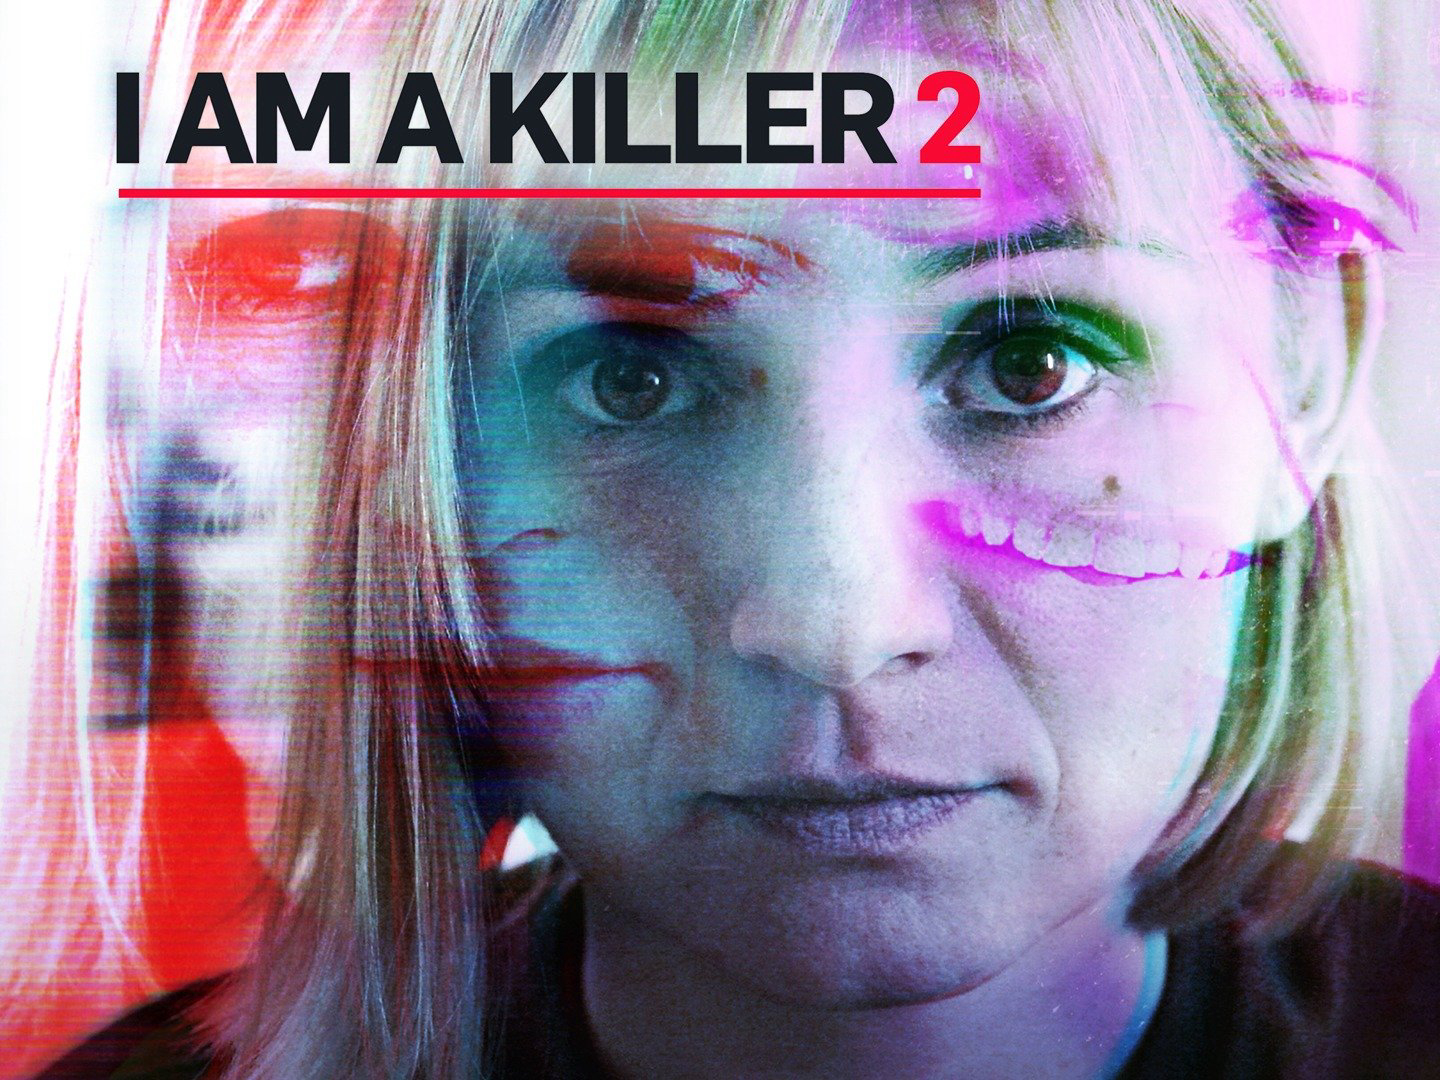 I AM A KILLER (Season 2) / I AM A KILLER (Season 2) (2020)